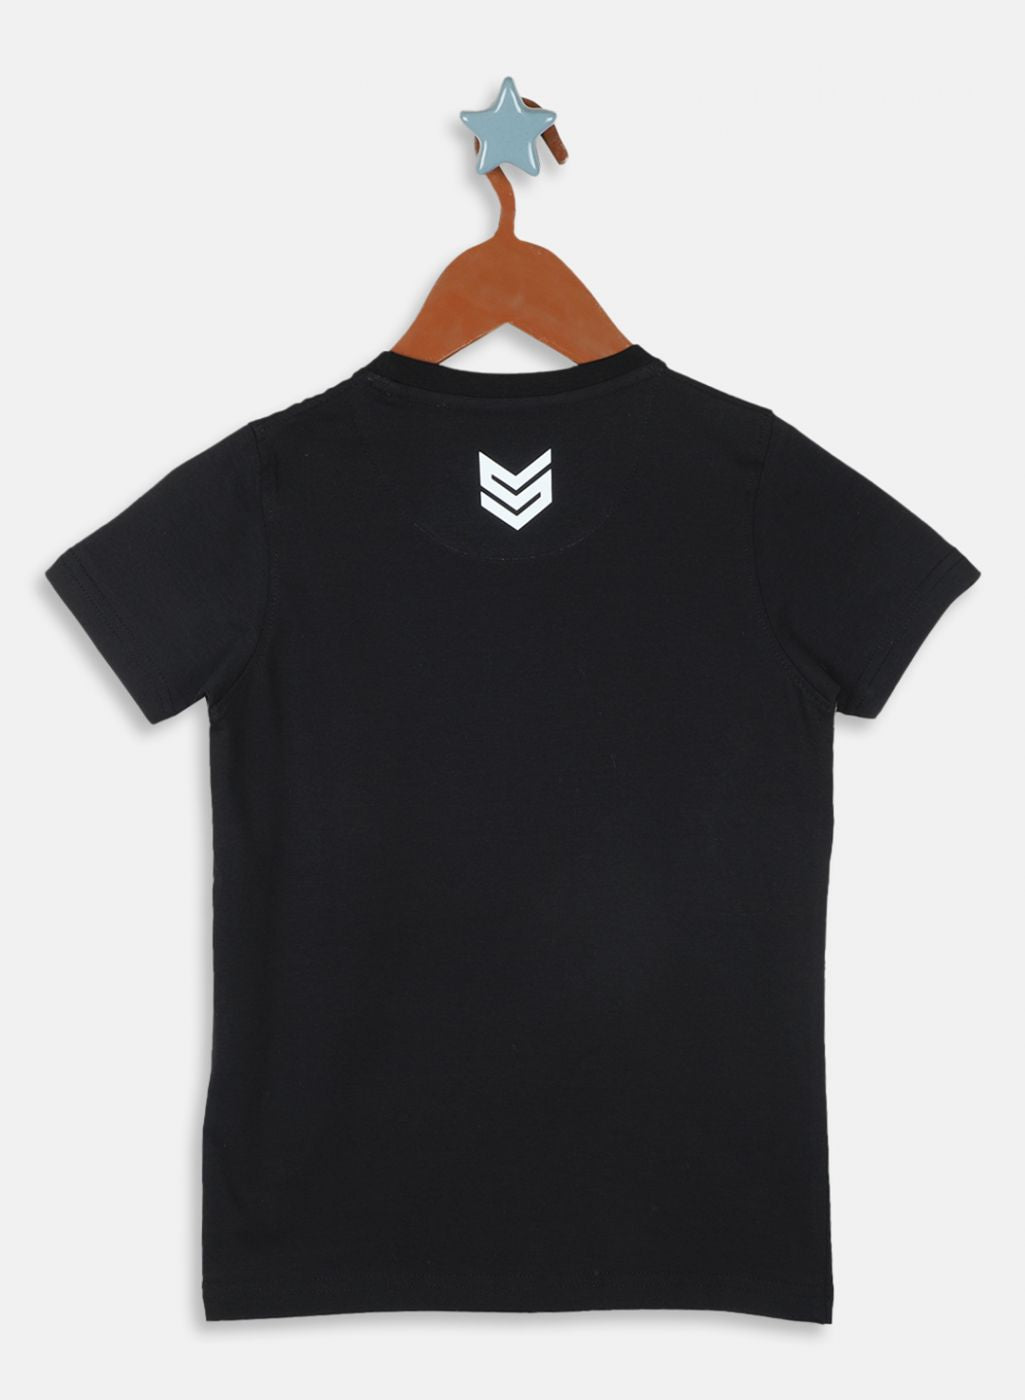 Boys Black Printed T-Shirt